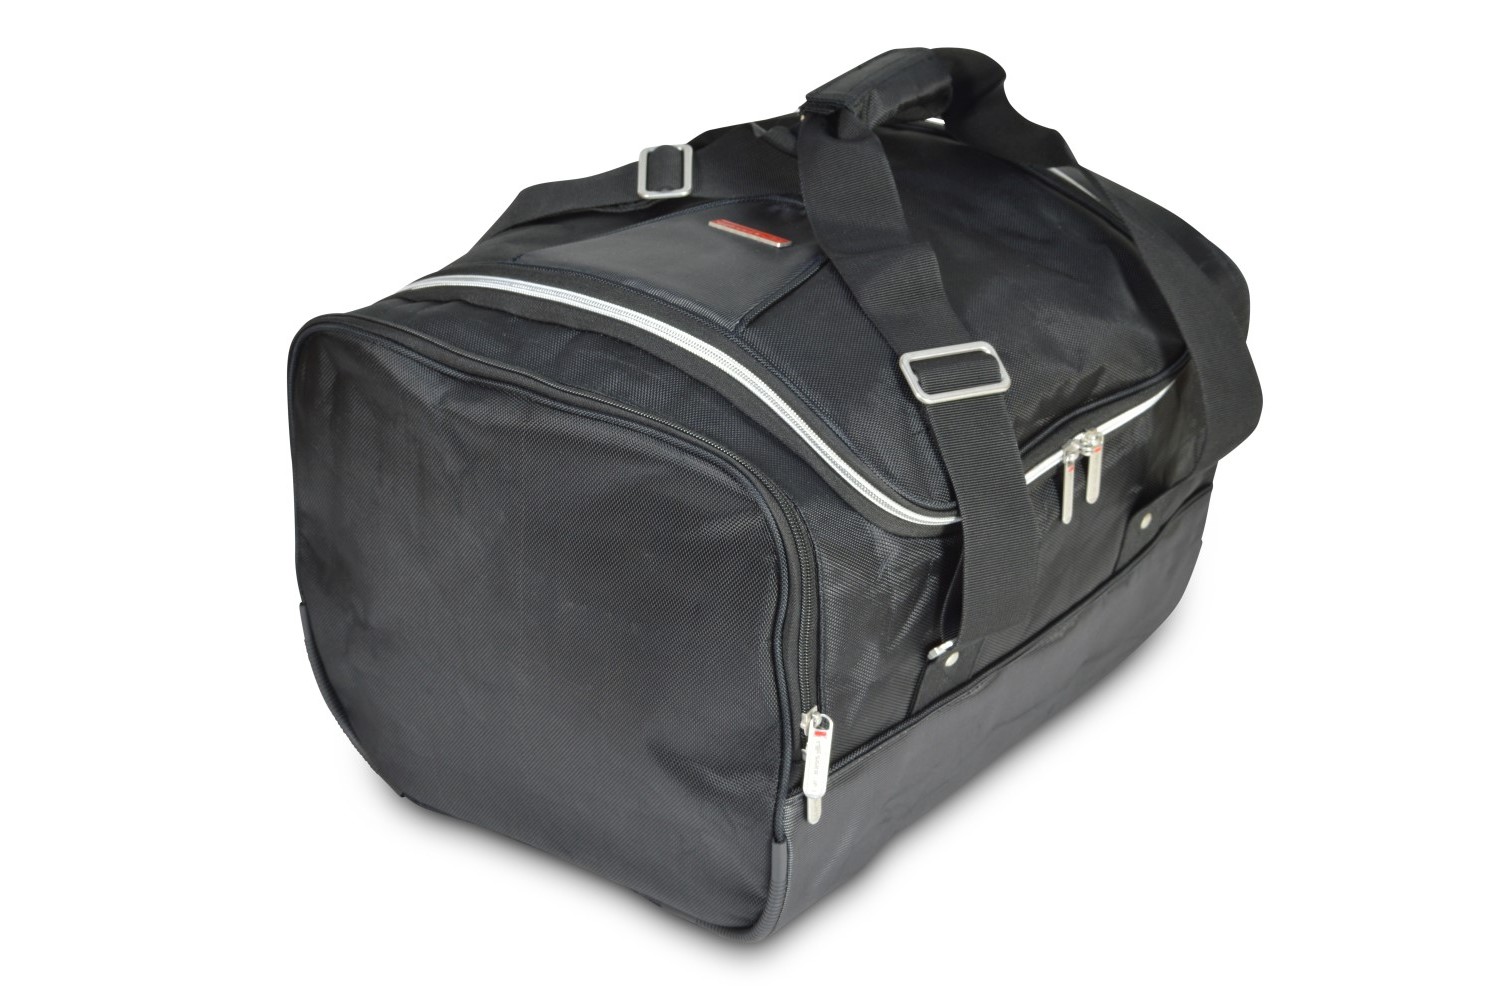 Travel bag - 35x30x45cm (WxHxL)